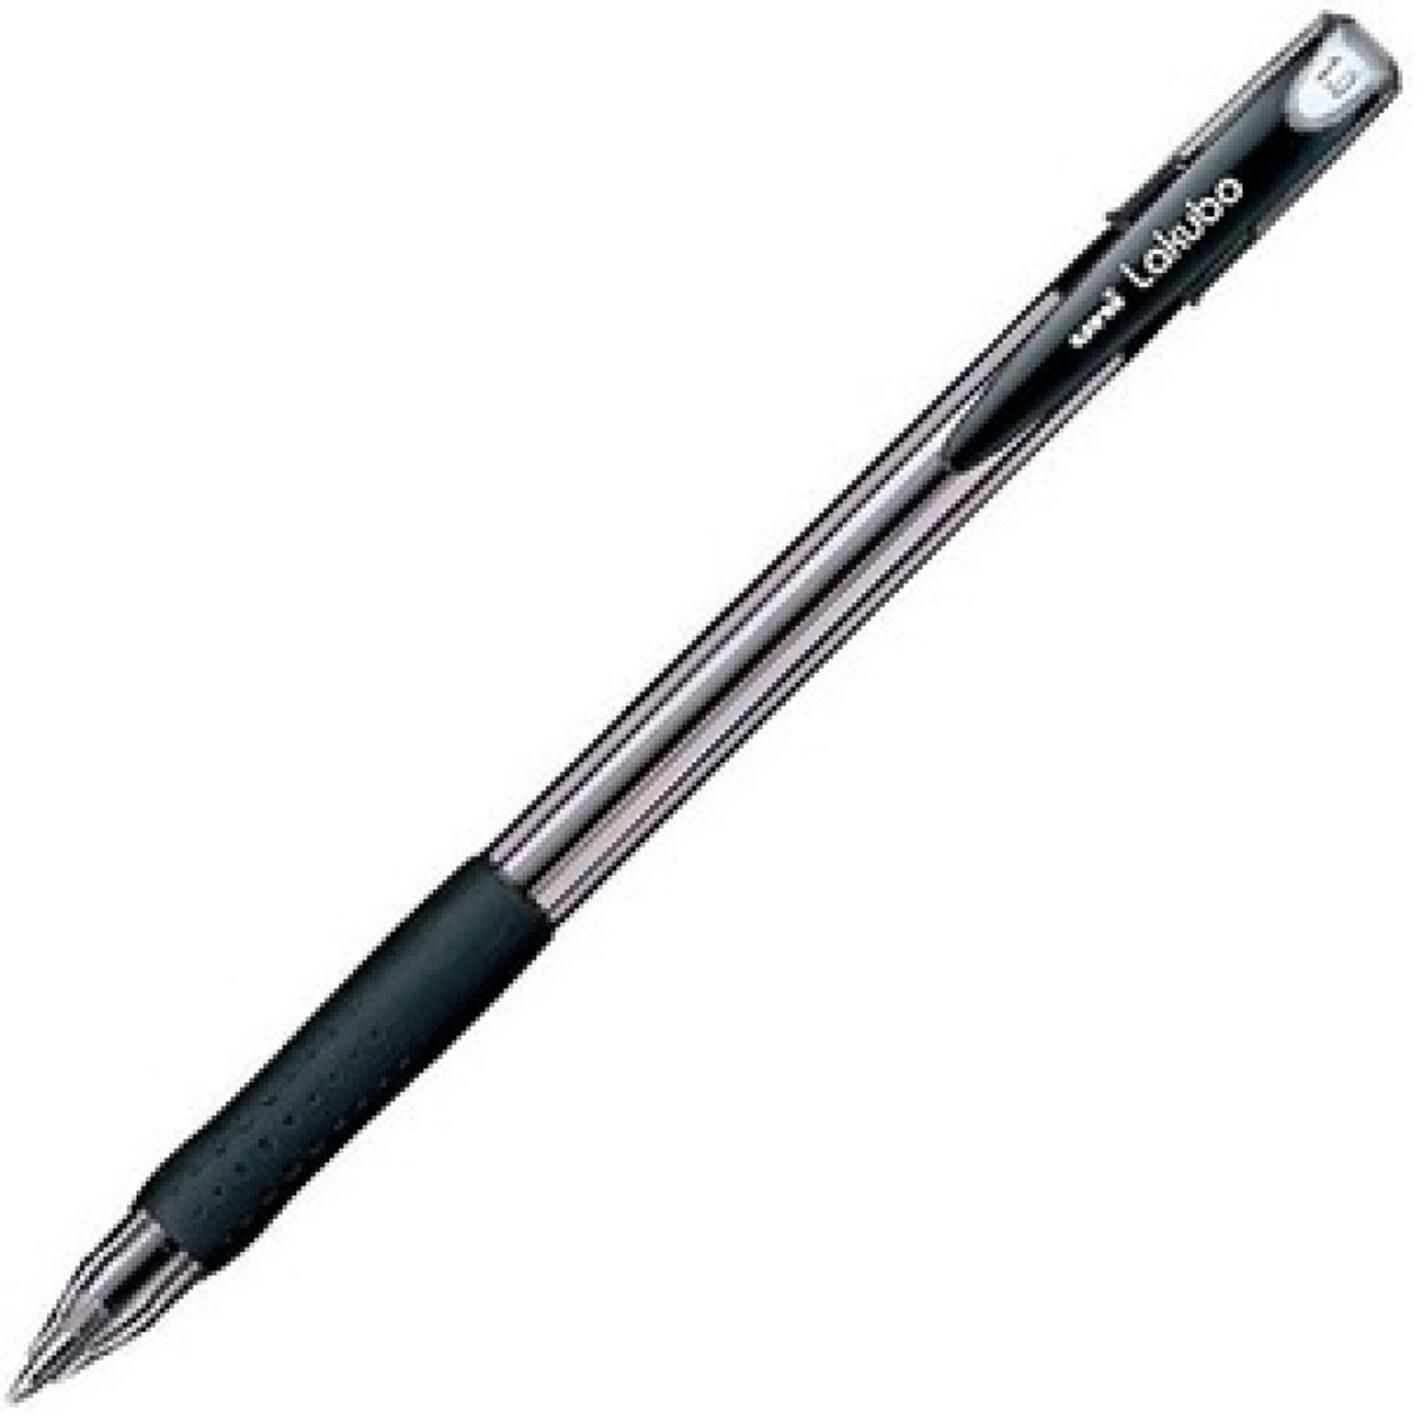 Lackubo ball pen 1.0 mm black